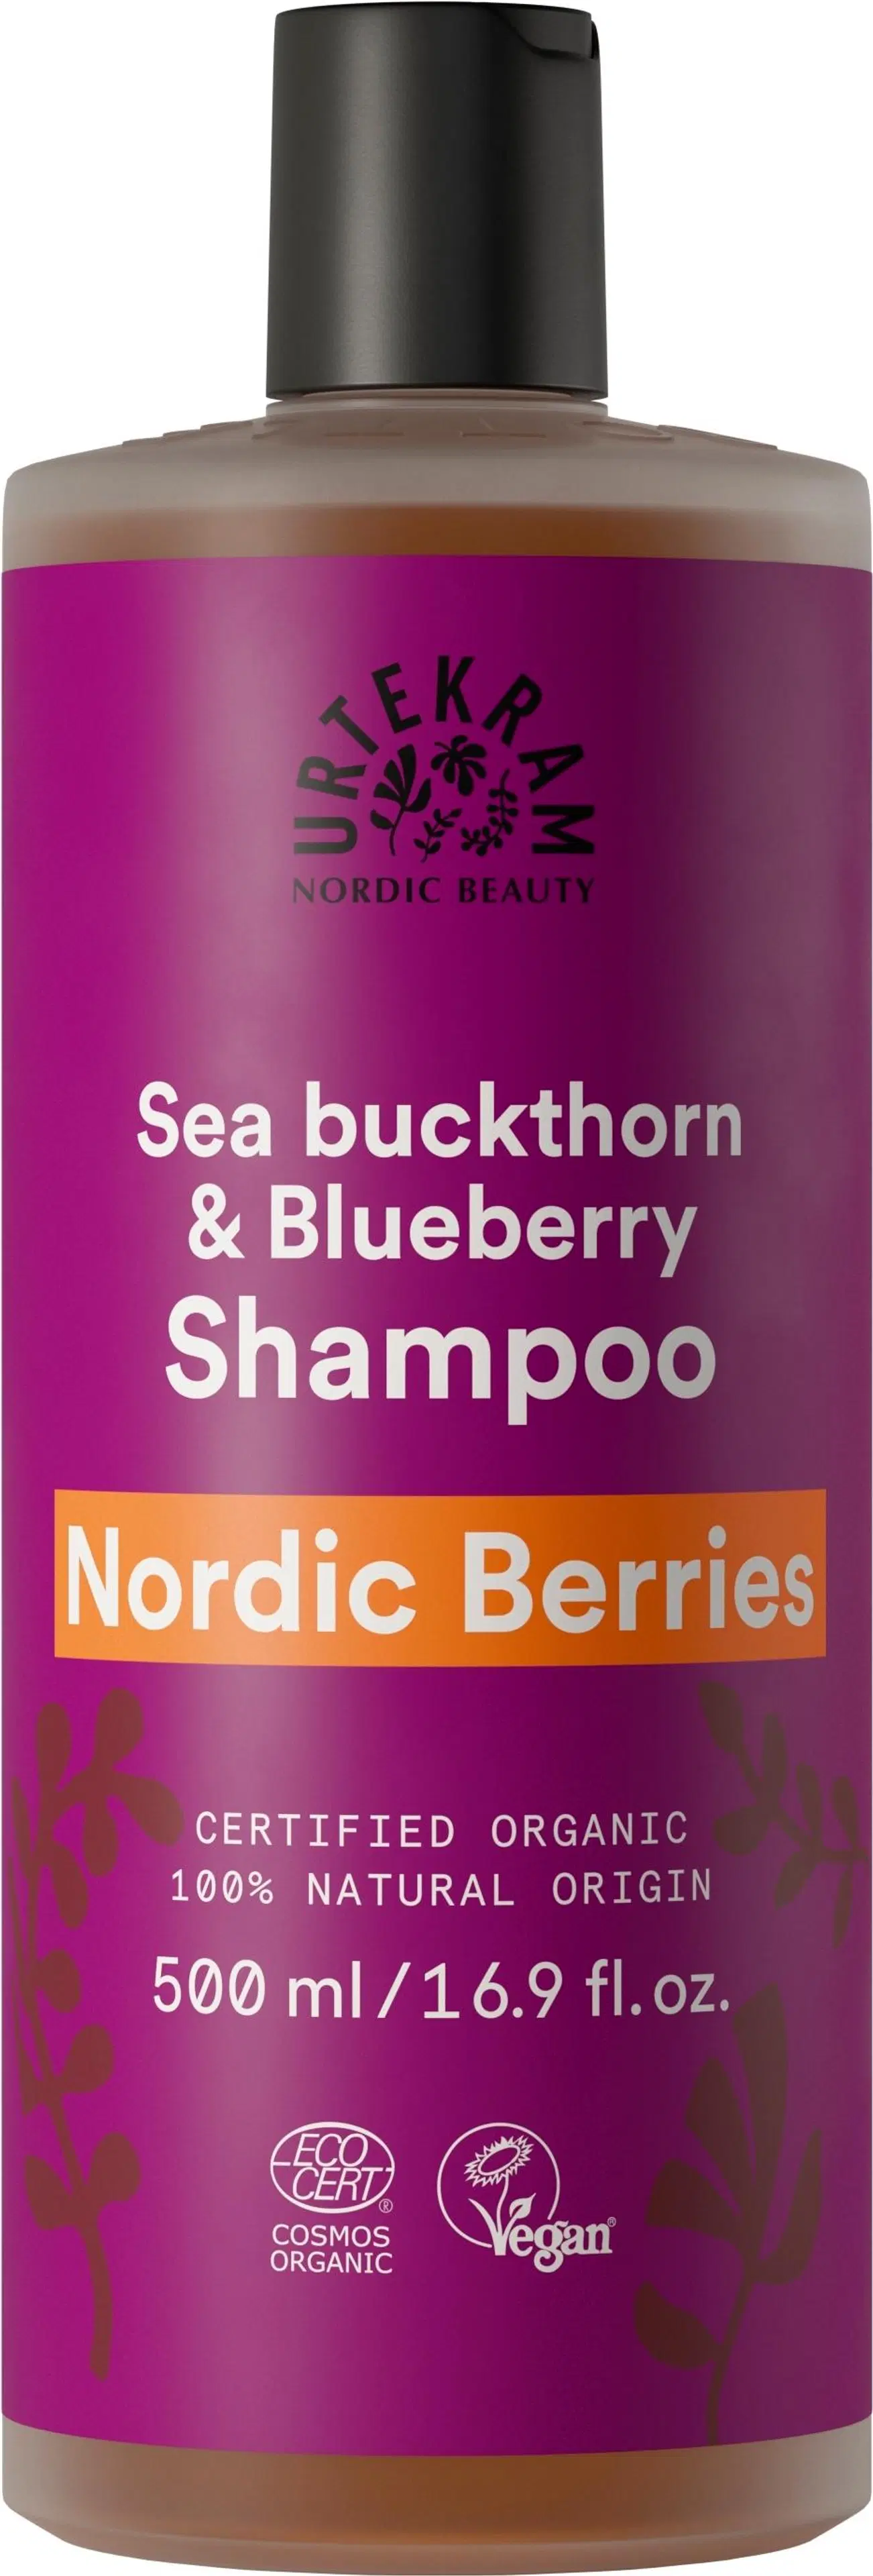 Urtekram Luomu Nordic Berries shampoo 500ml